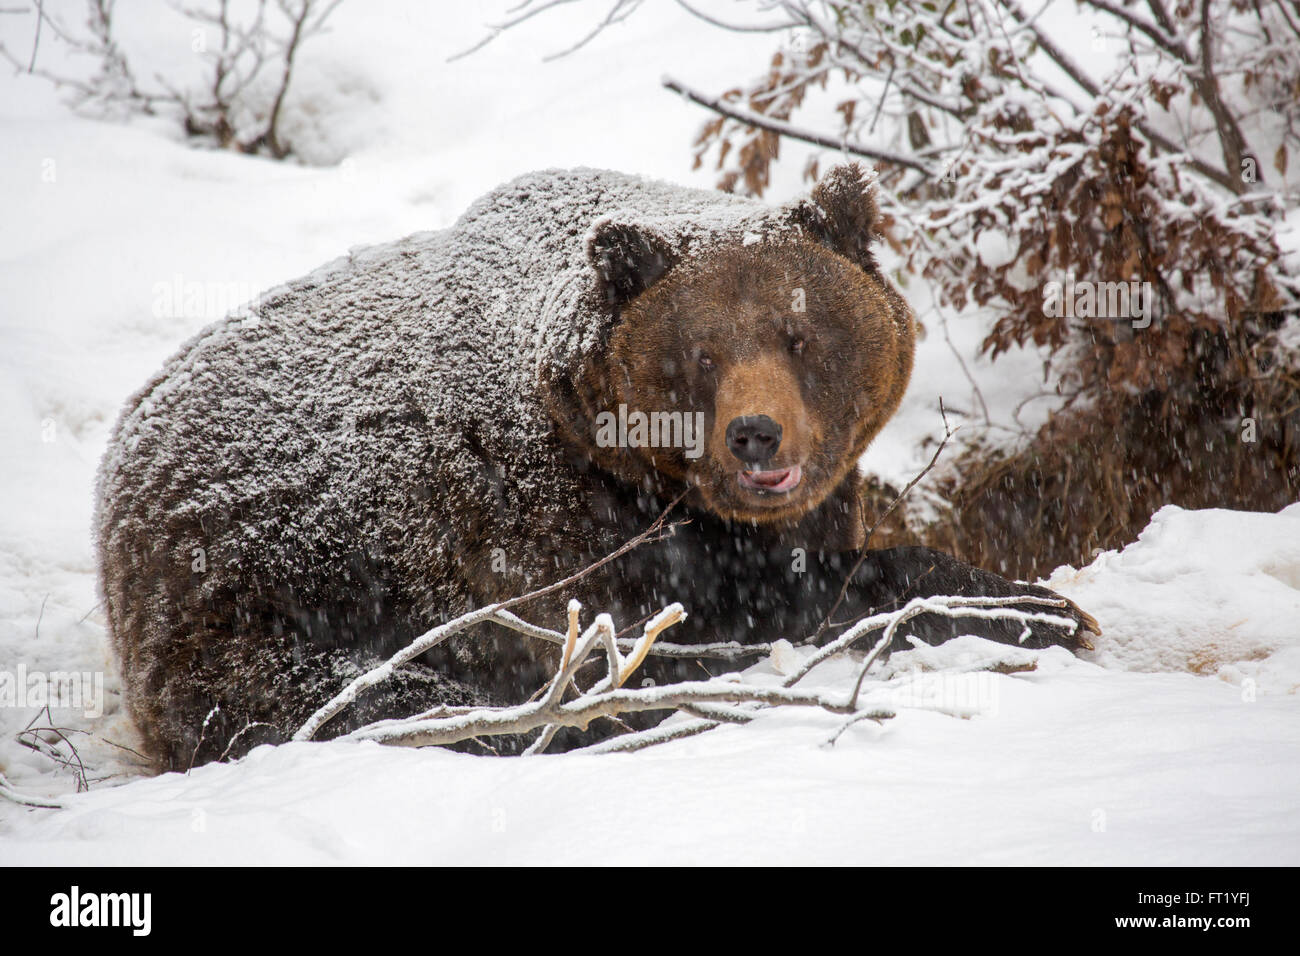 Ours brun (Ursus arctos) entrant dans la neige au cours de la douche automne / hiver Banque D'Images